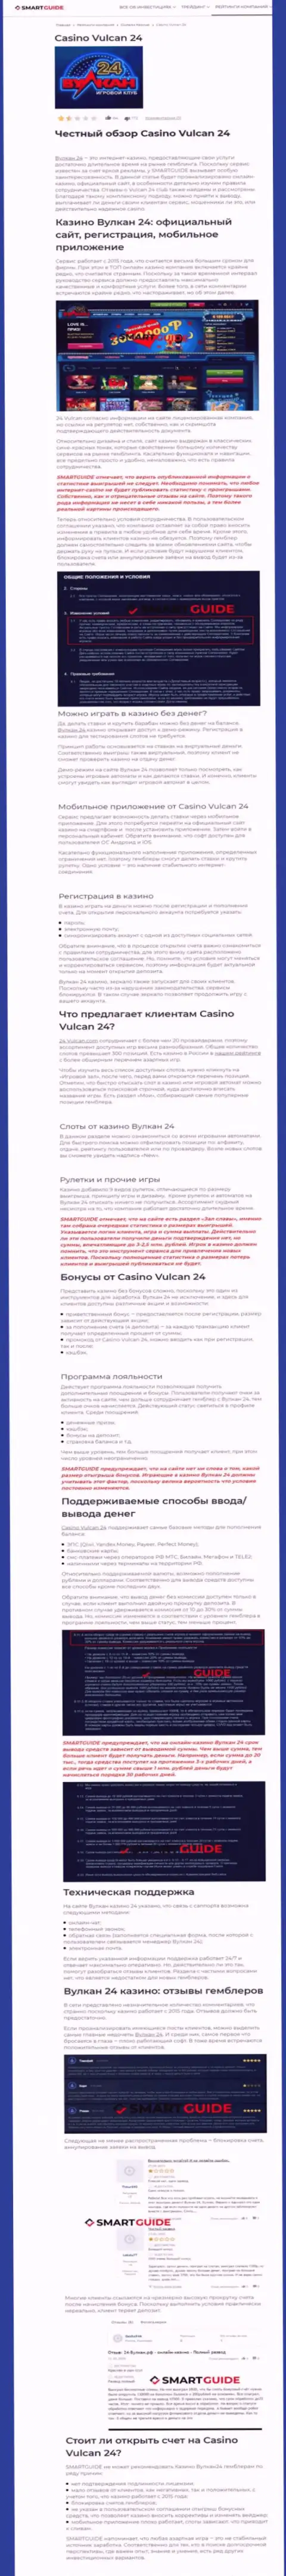 Вулкан-24 Ком - это контора, которая зарабатывает на краже денежных средств своих клиентов (обзор проделок)